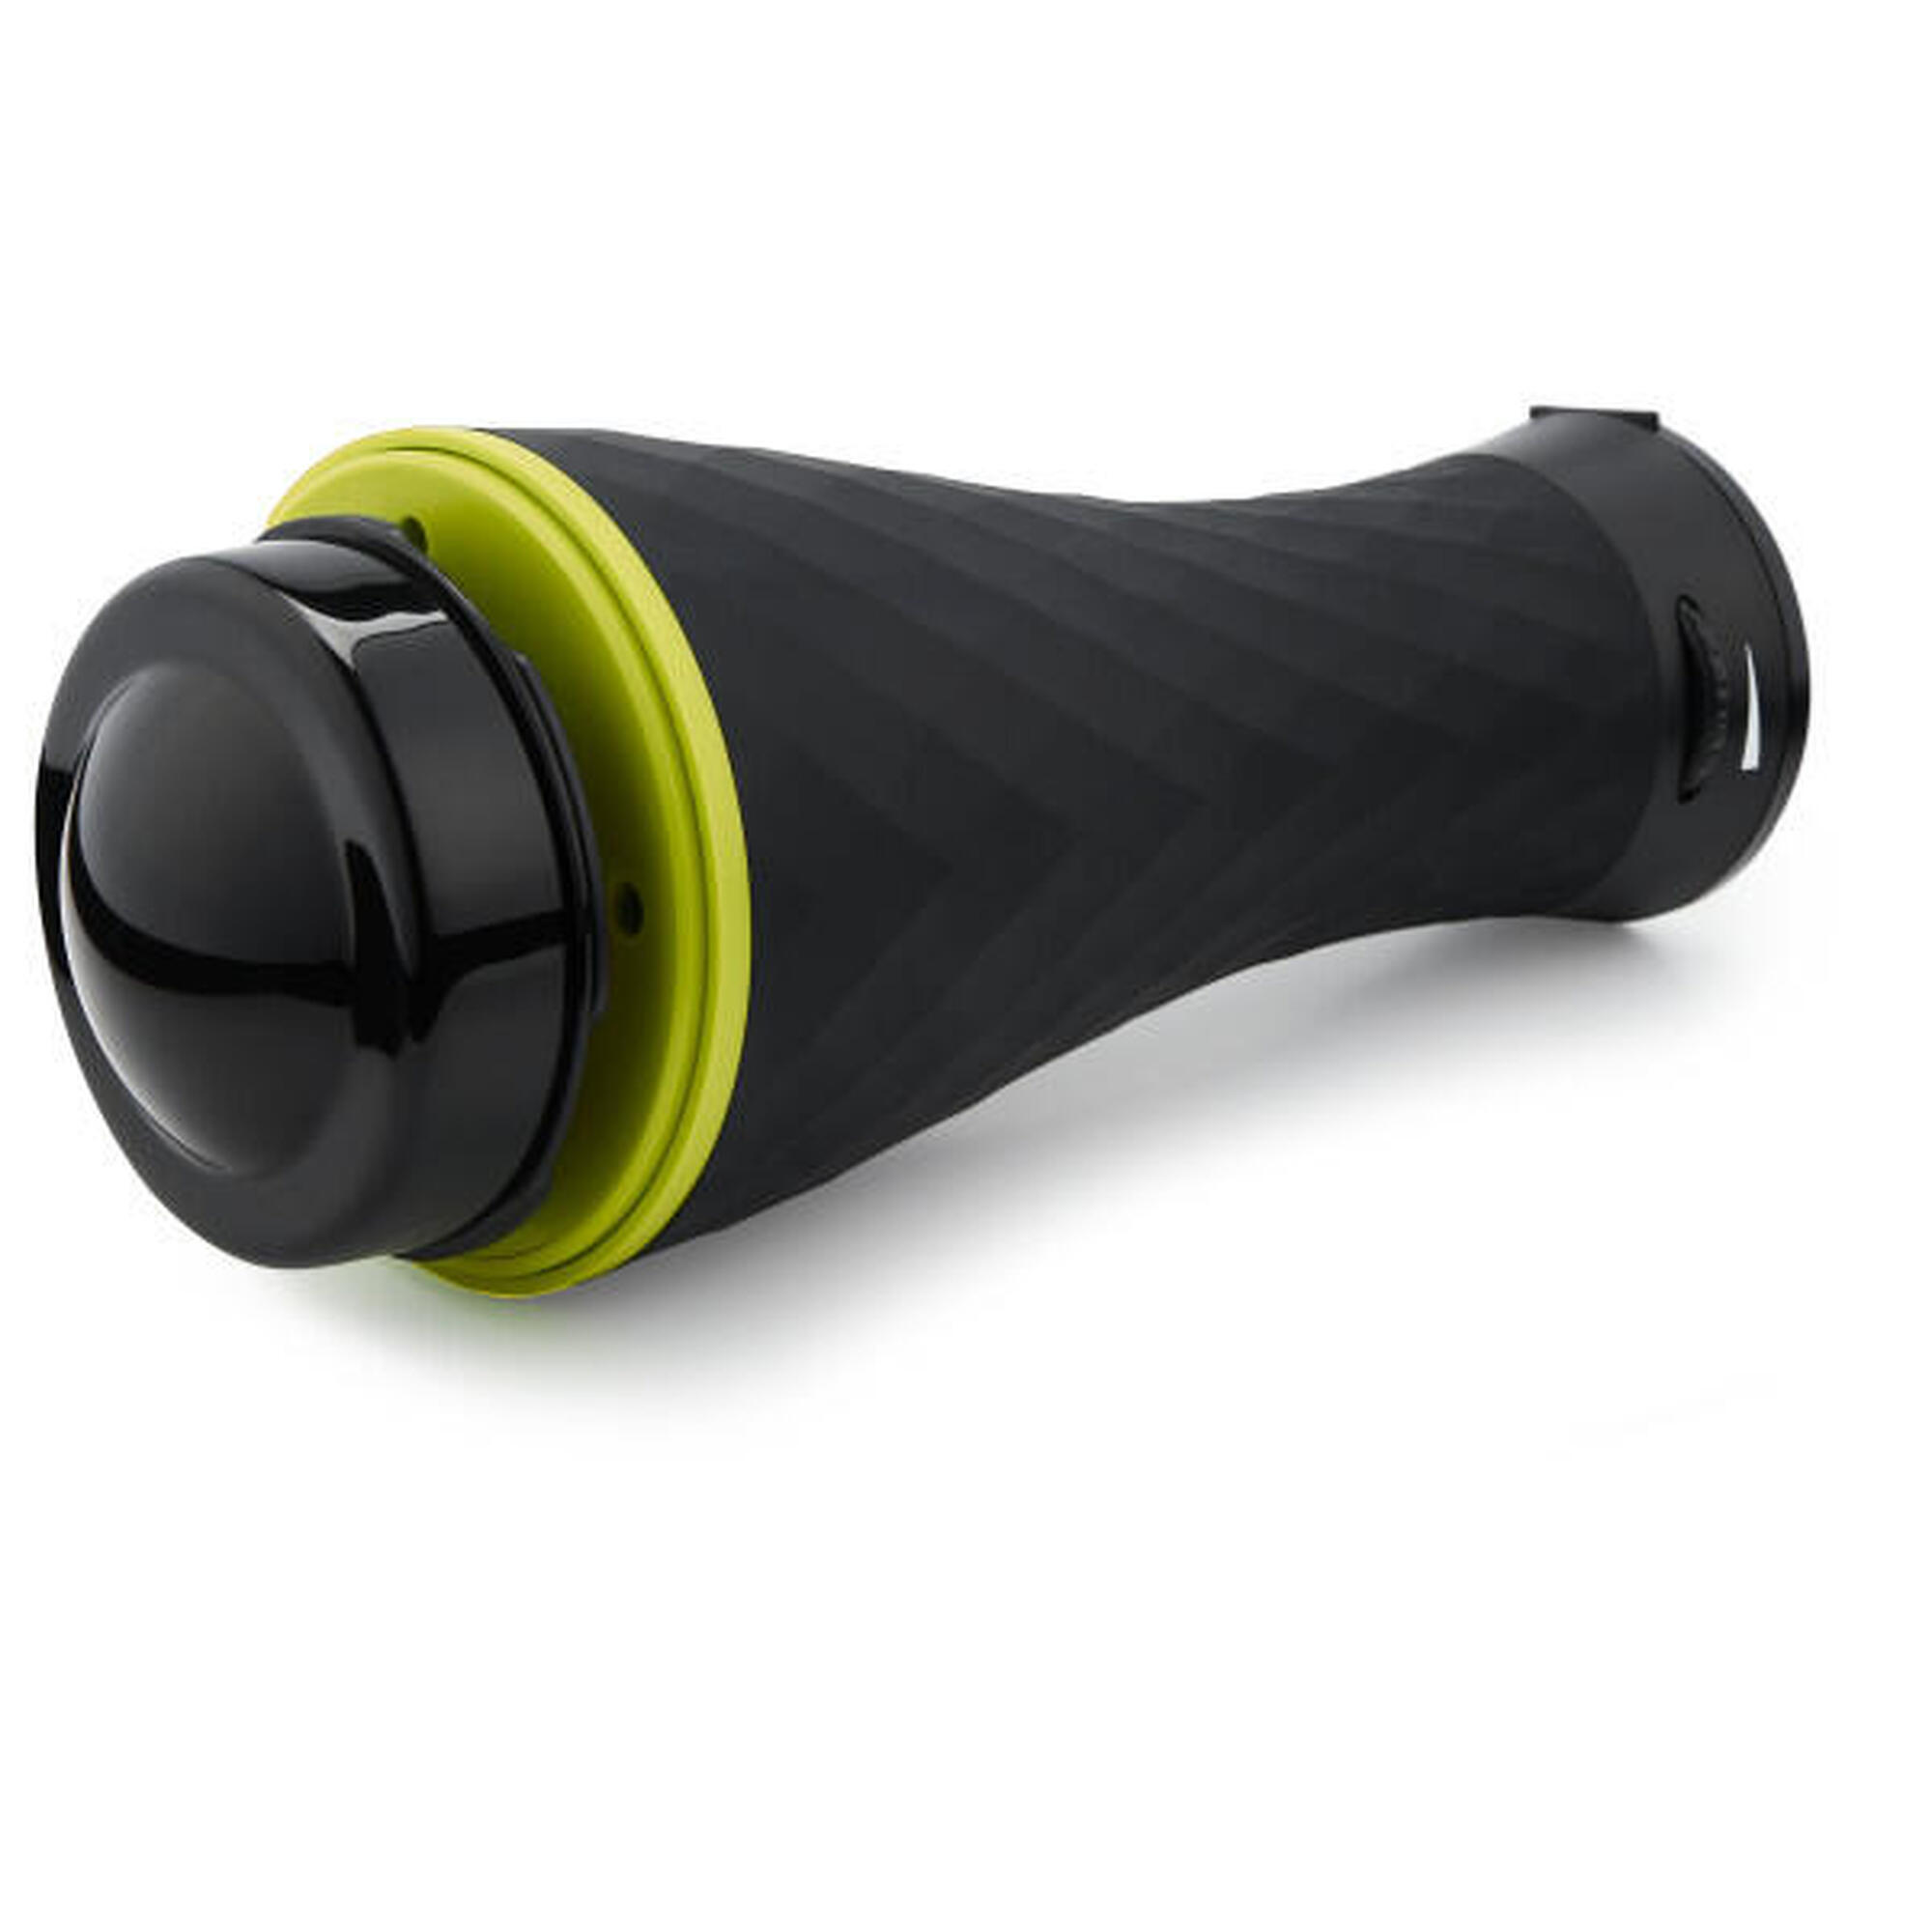 Triggerpoint: Dispositivo de massagem vibratória, com velocidades ajustáveis